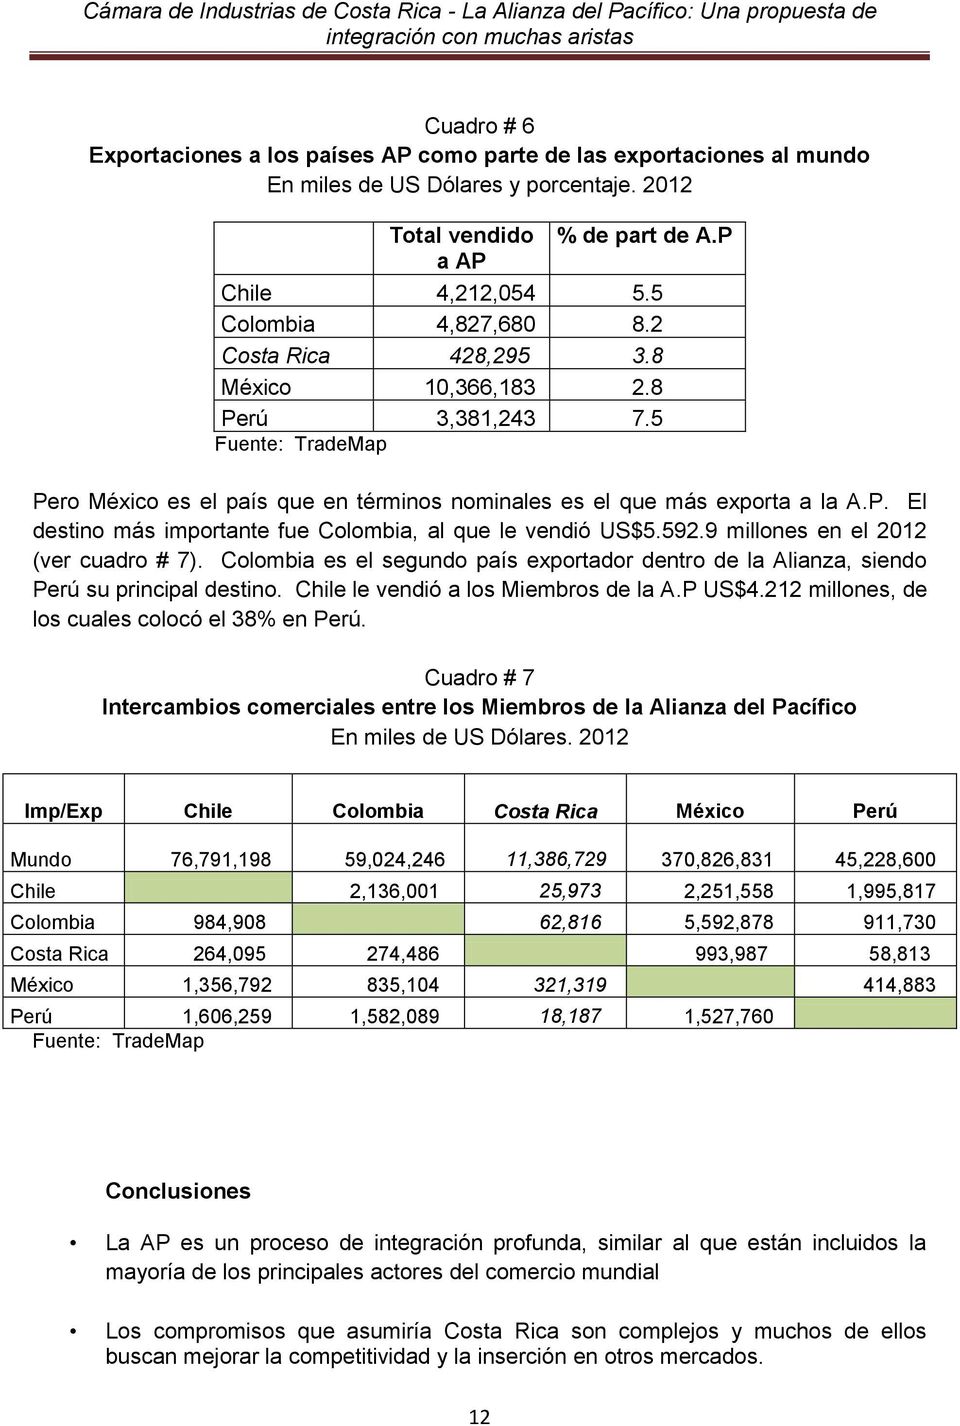 592.9 millones en el 2012 (ver cuadro # 7). Colombia es el segundo país exportador dentro de la Alianza, siendo Perú su principal destino. Chile le vendió a los Miembros de la A.P US$4.